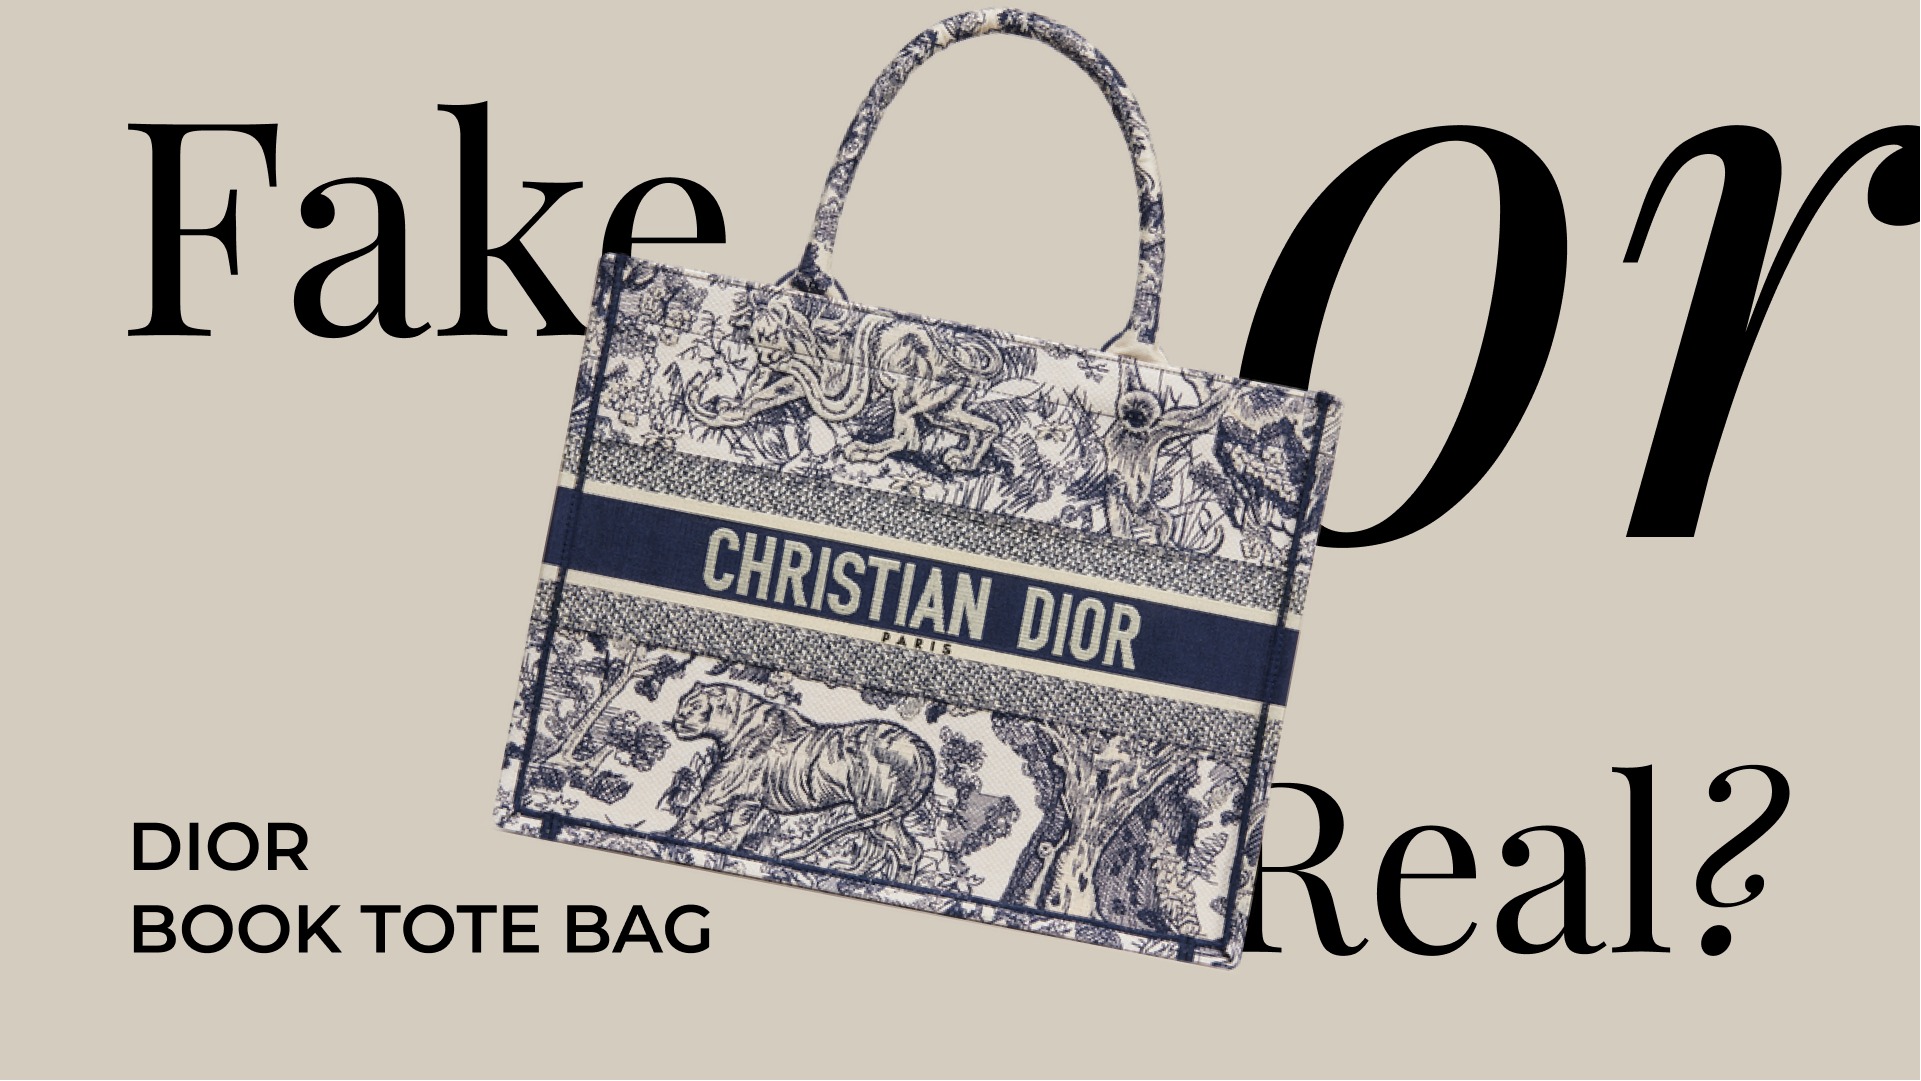 Женские тканевые сумки Christian Dior купить в Москве, цены на сумки Диор из ткани